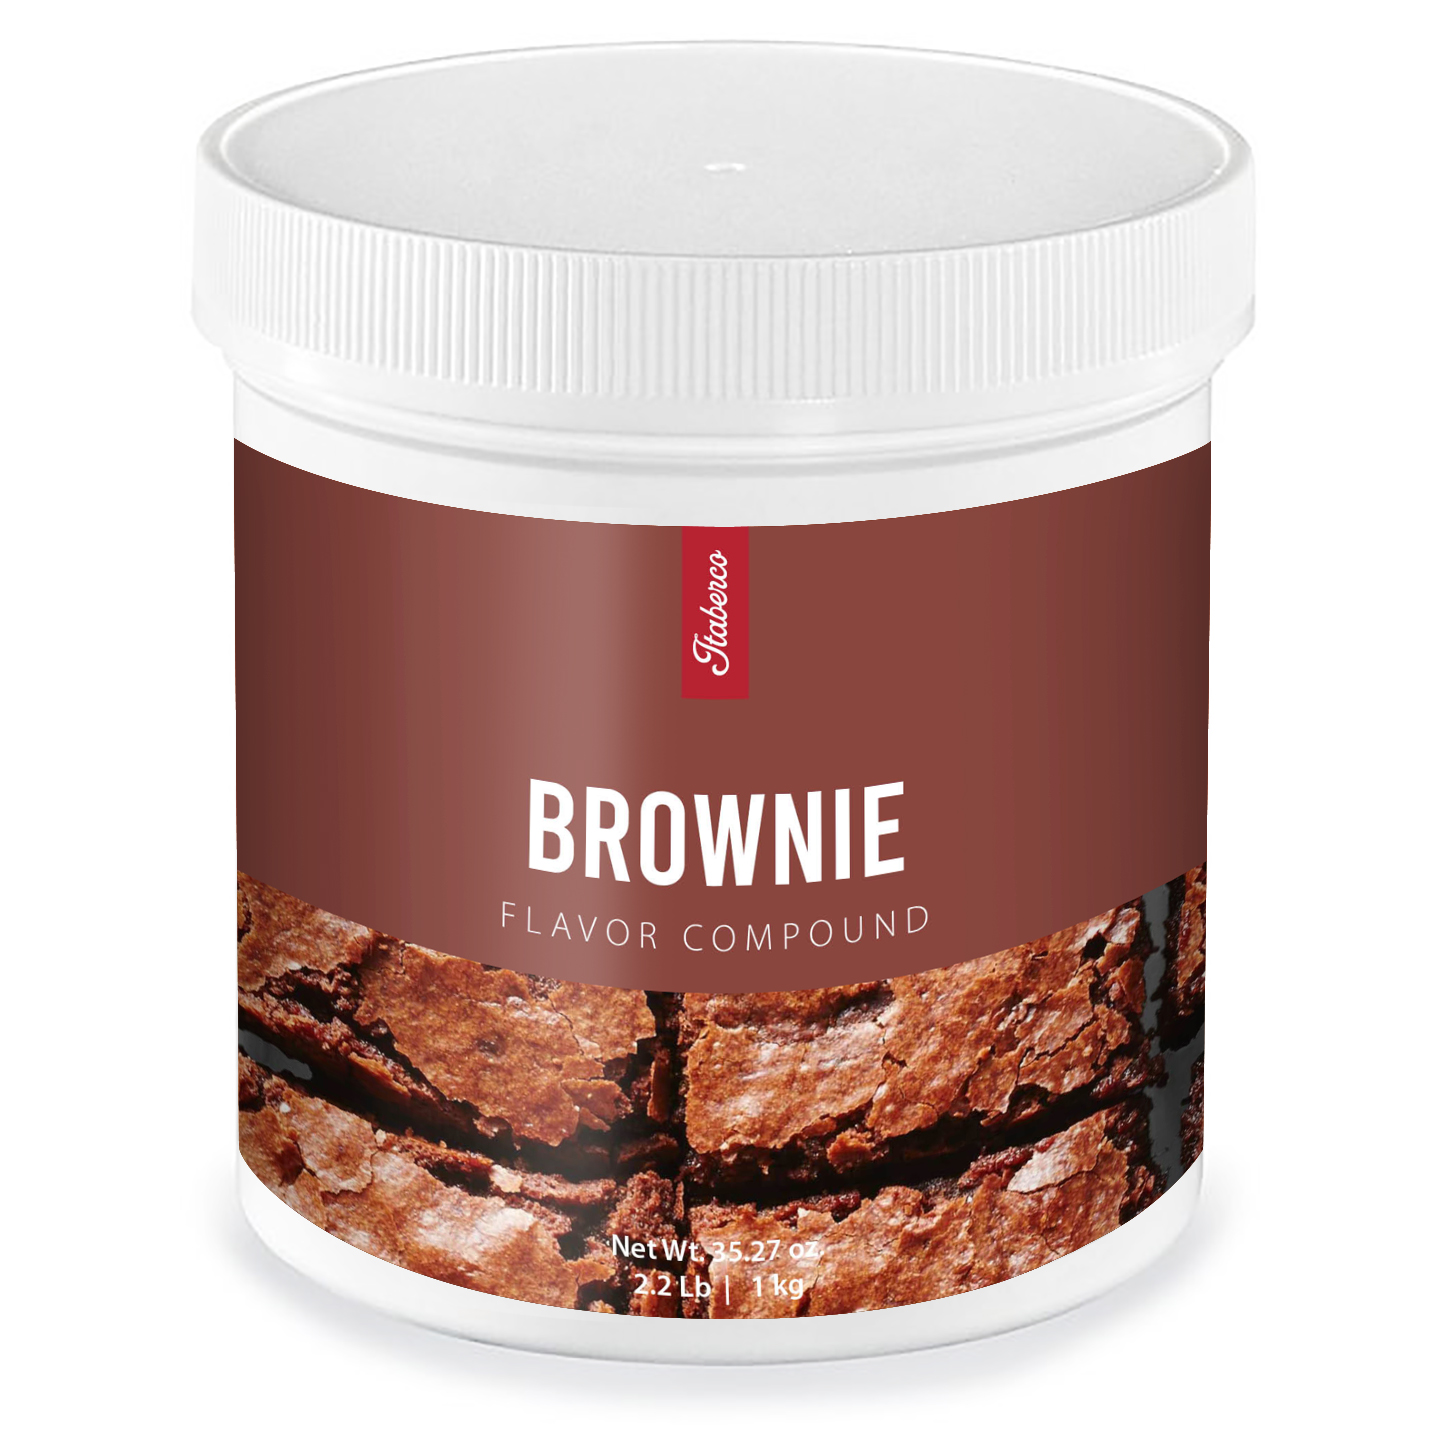 Brownie Flavor Compound